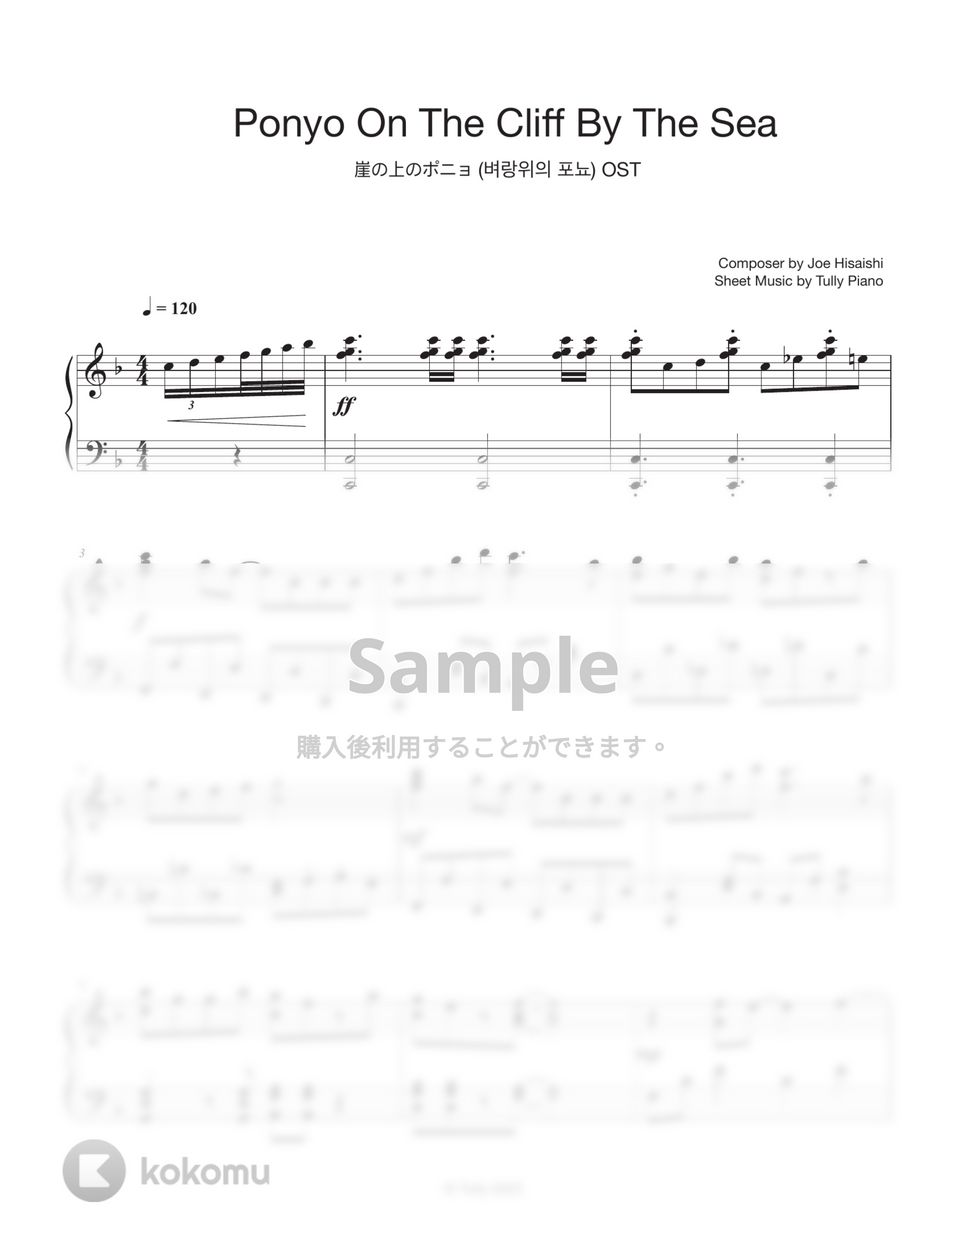 久石譲 - 崖の上のポニョ by Tully Piano